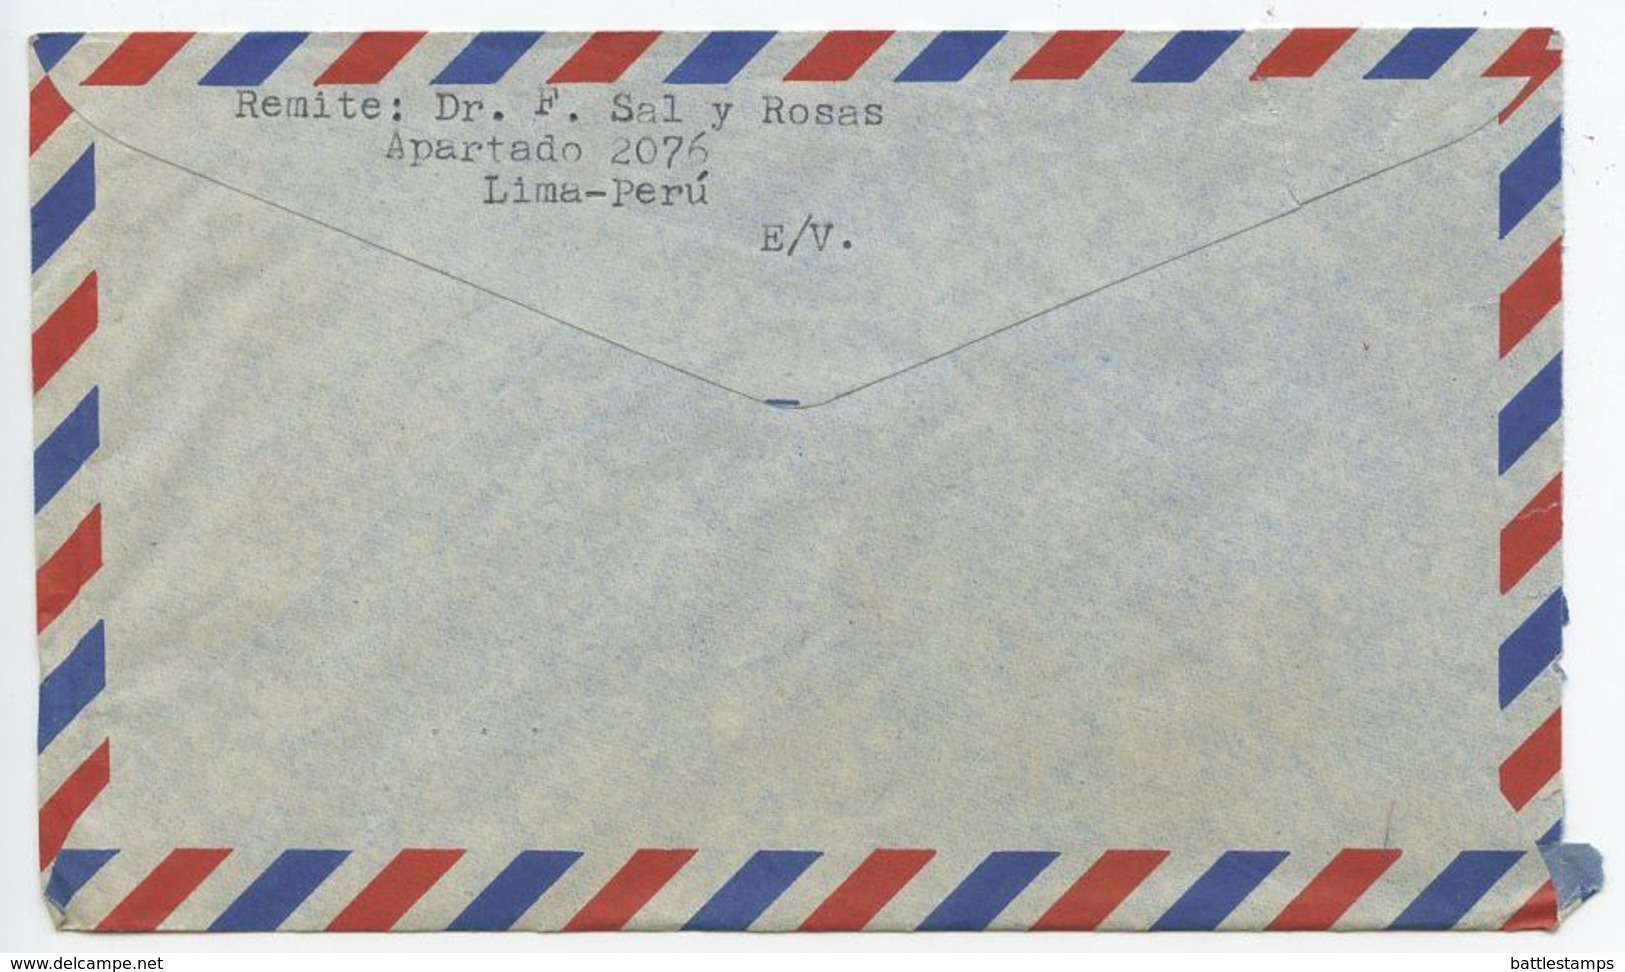 Peru 1957 Airmail Cover Lima To Ann Arbor Michigan, Scott C117 Airport - Peru